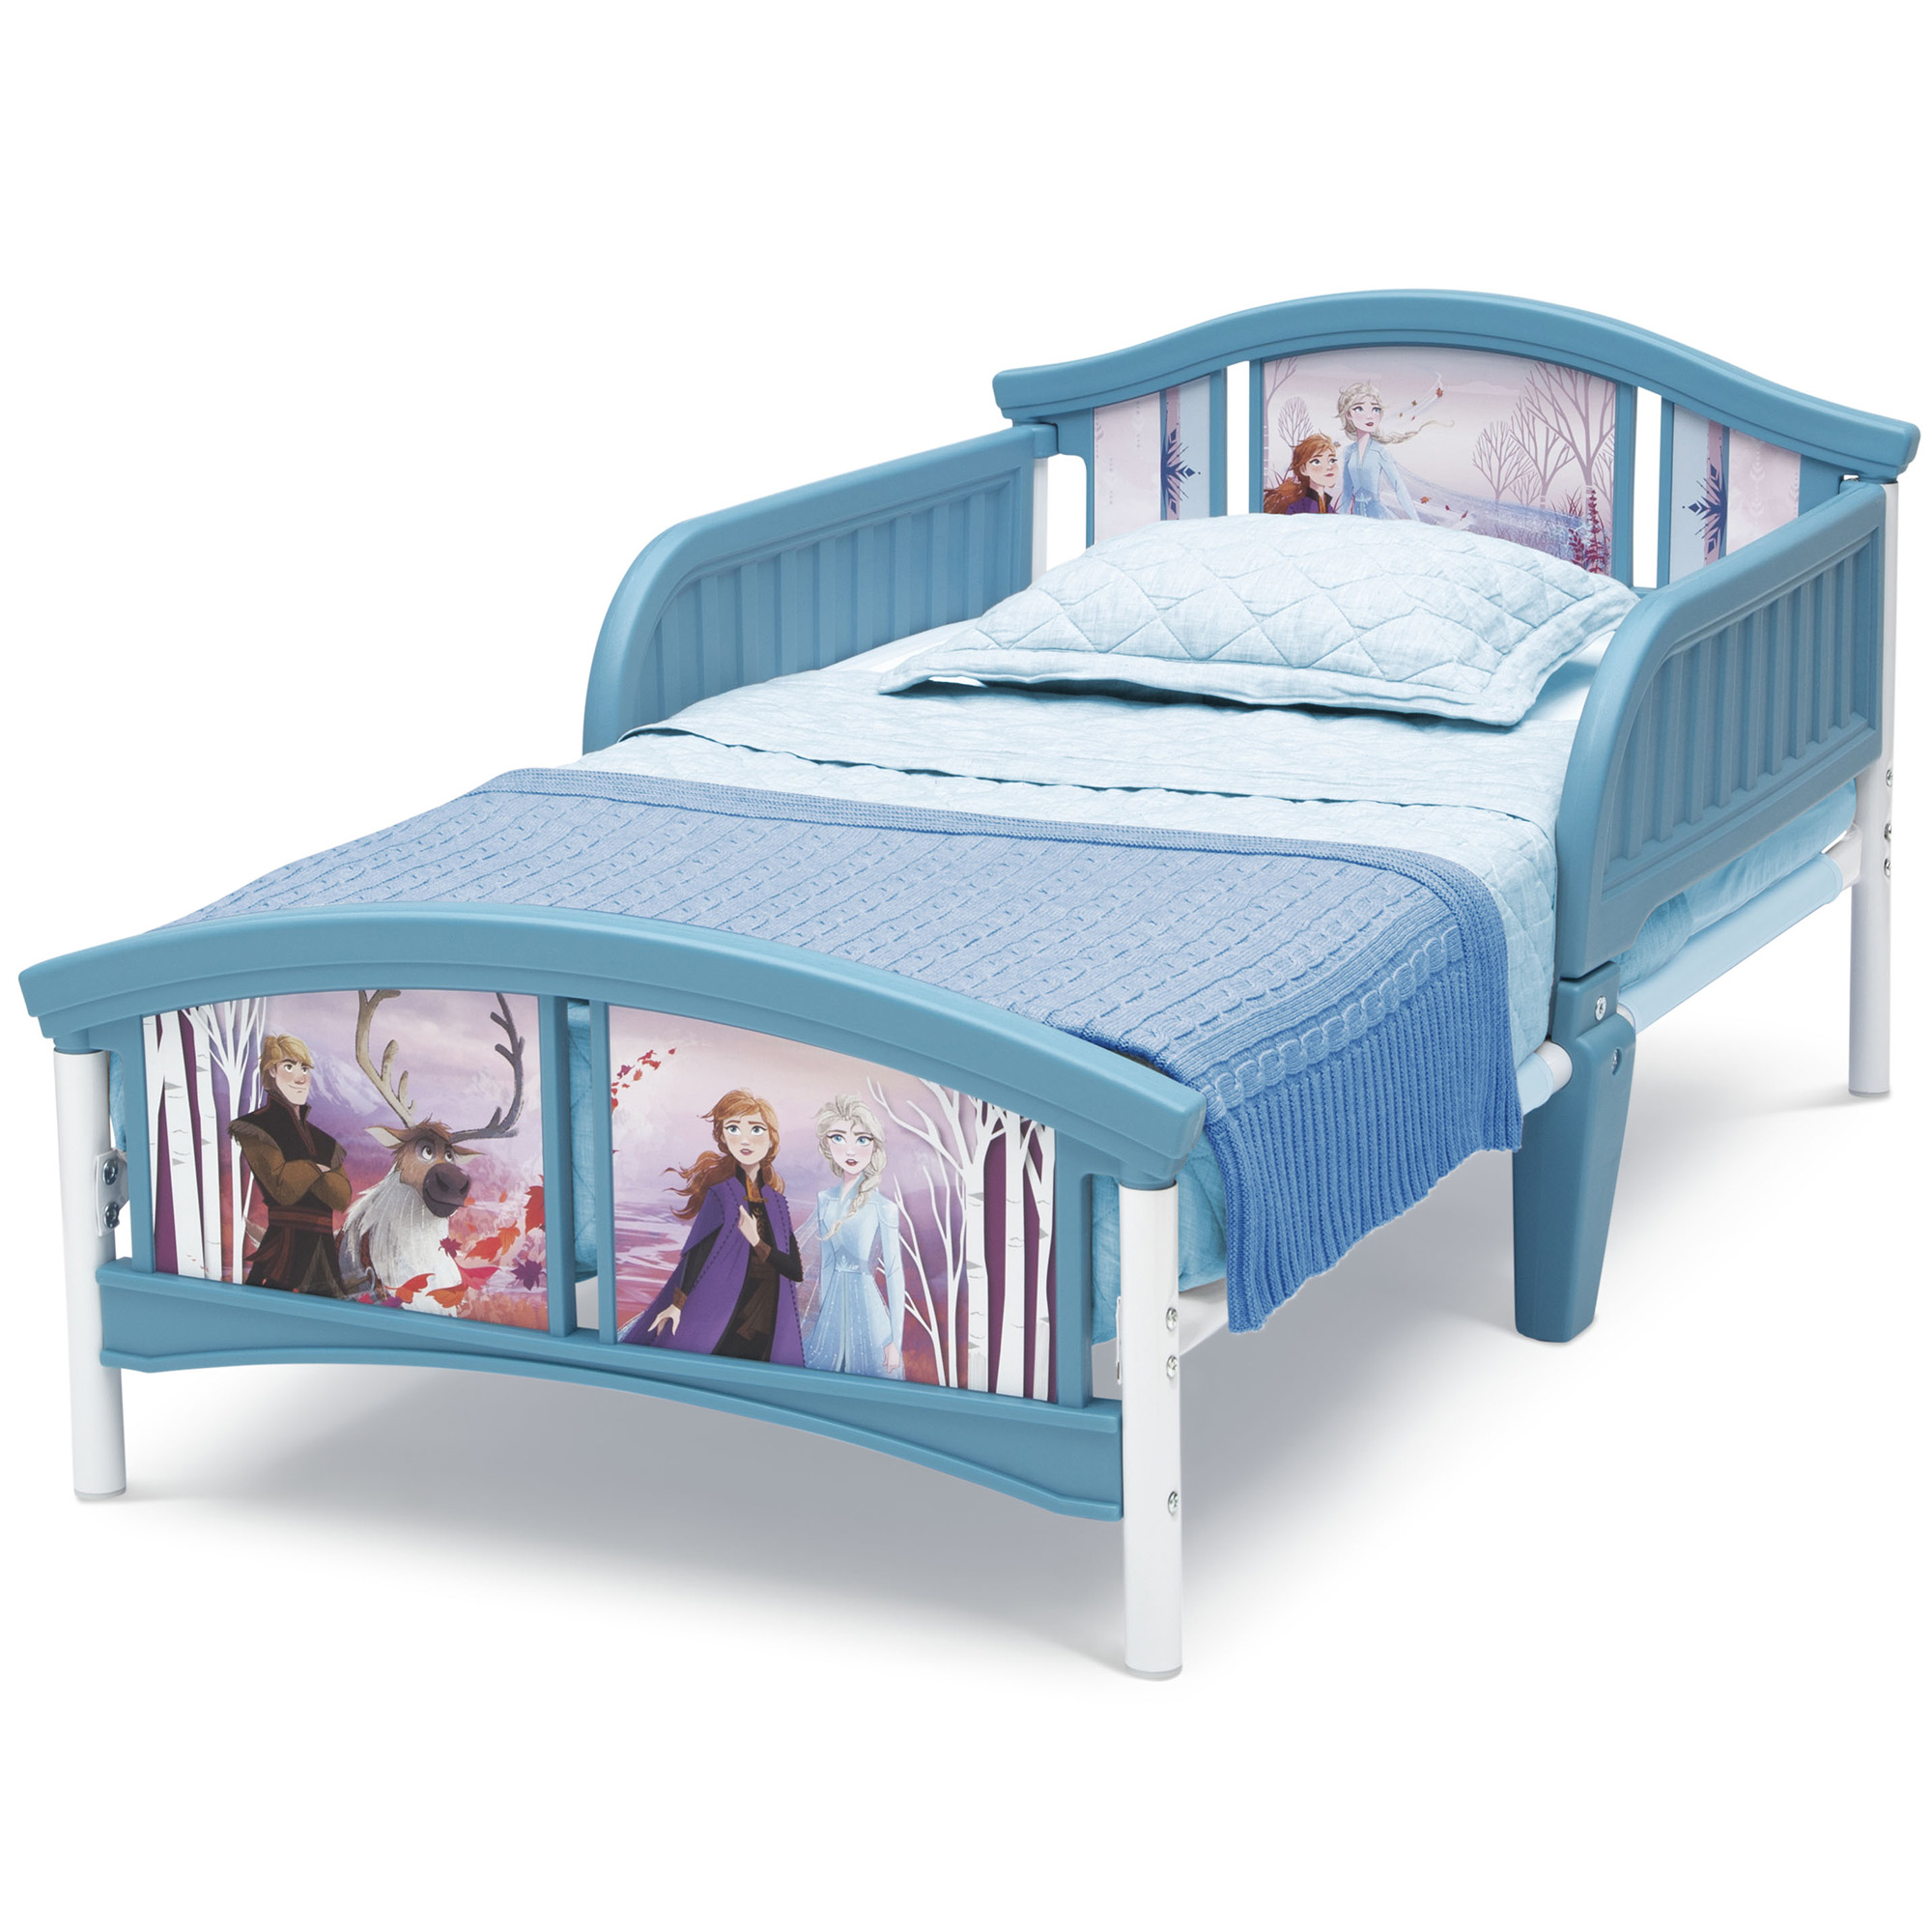 Disney Frozen II Plastic Toddler Bed by Delta Children - image 4 of 6